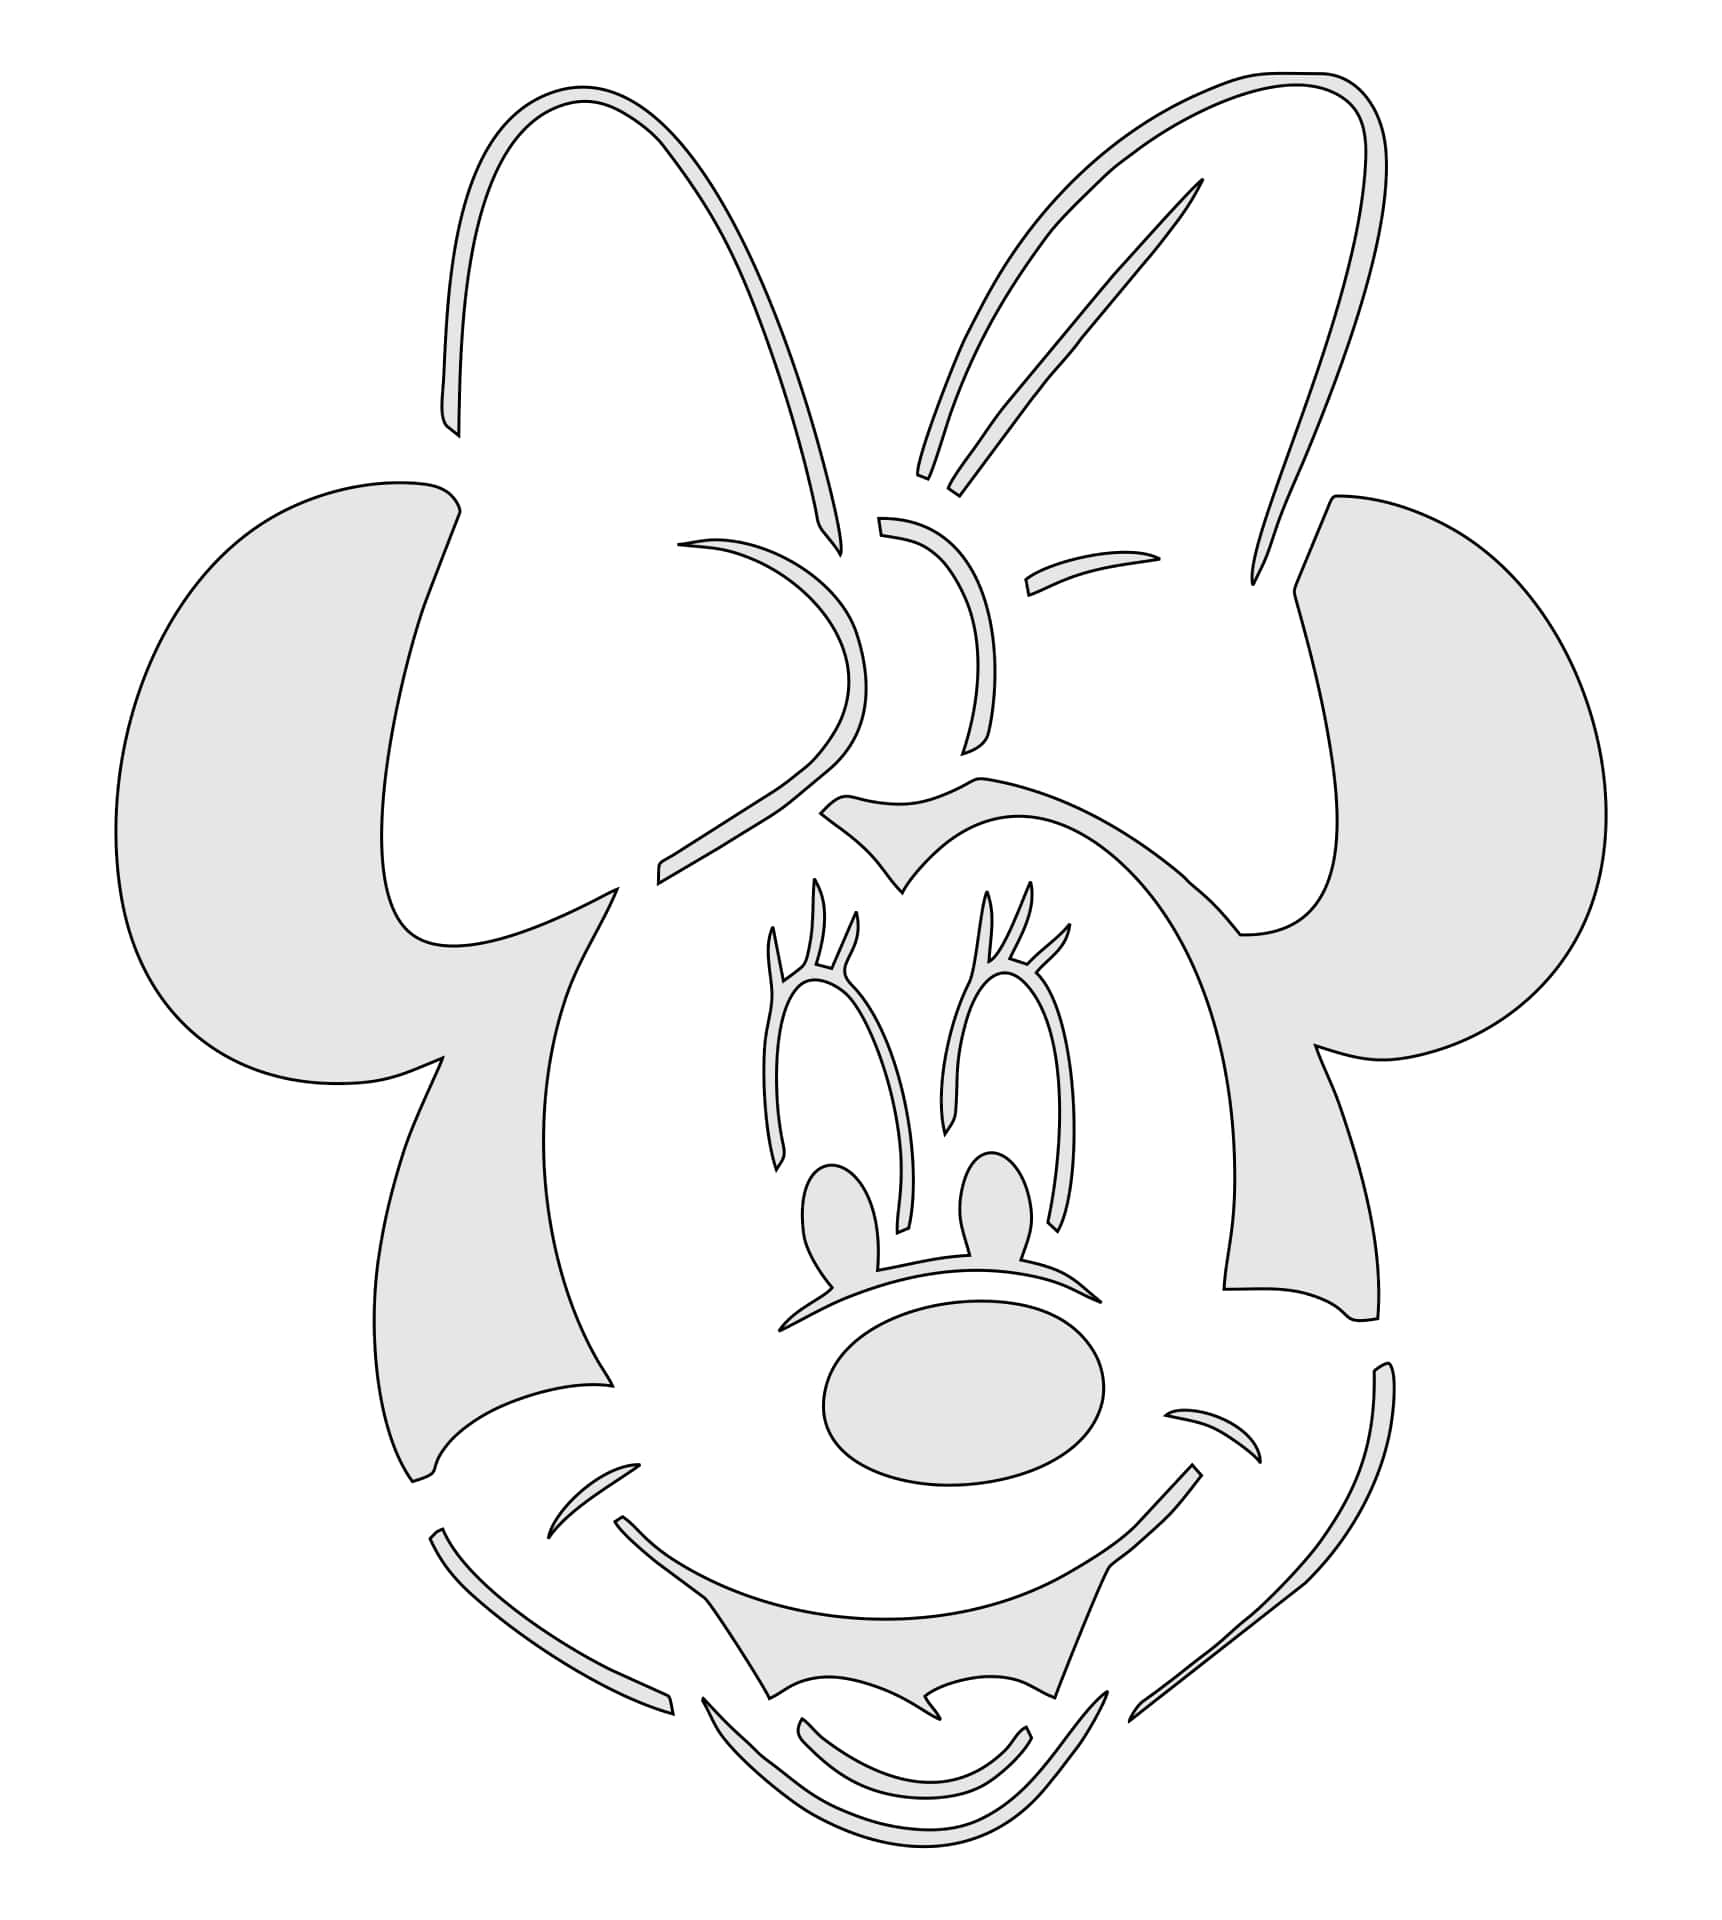 Preparatiper Un Po' Di Divertimento Con La Topolina Preferita Di Tutti - Minnie Mouse!